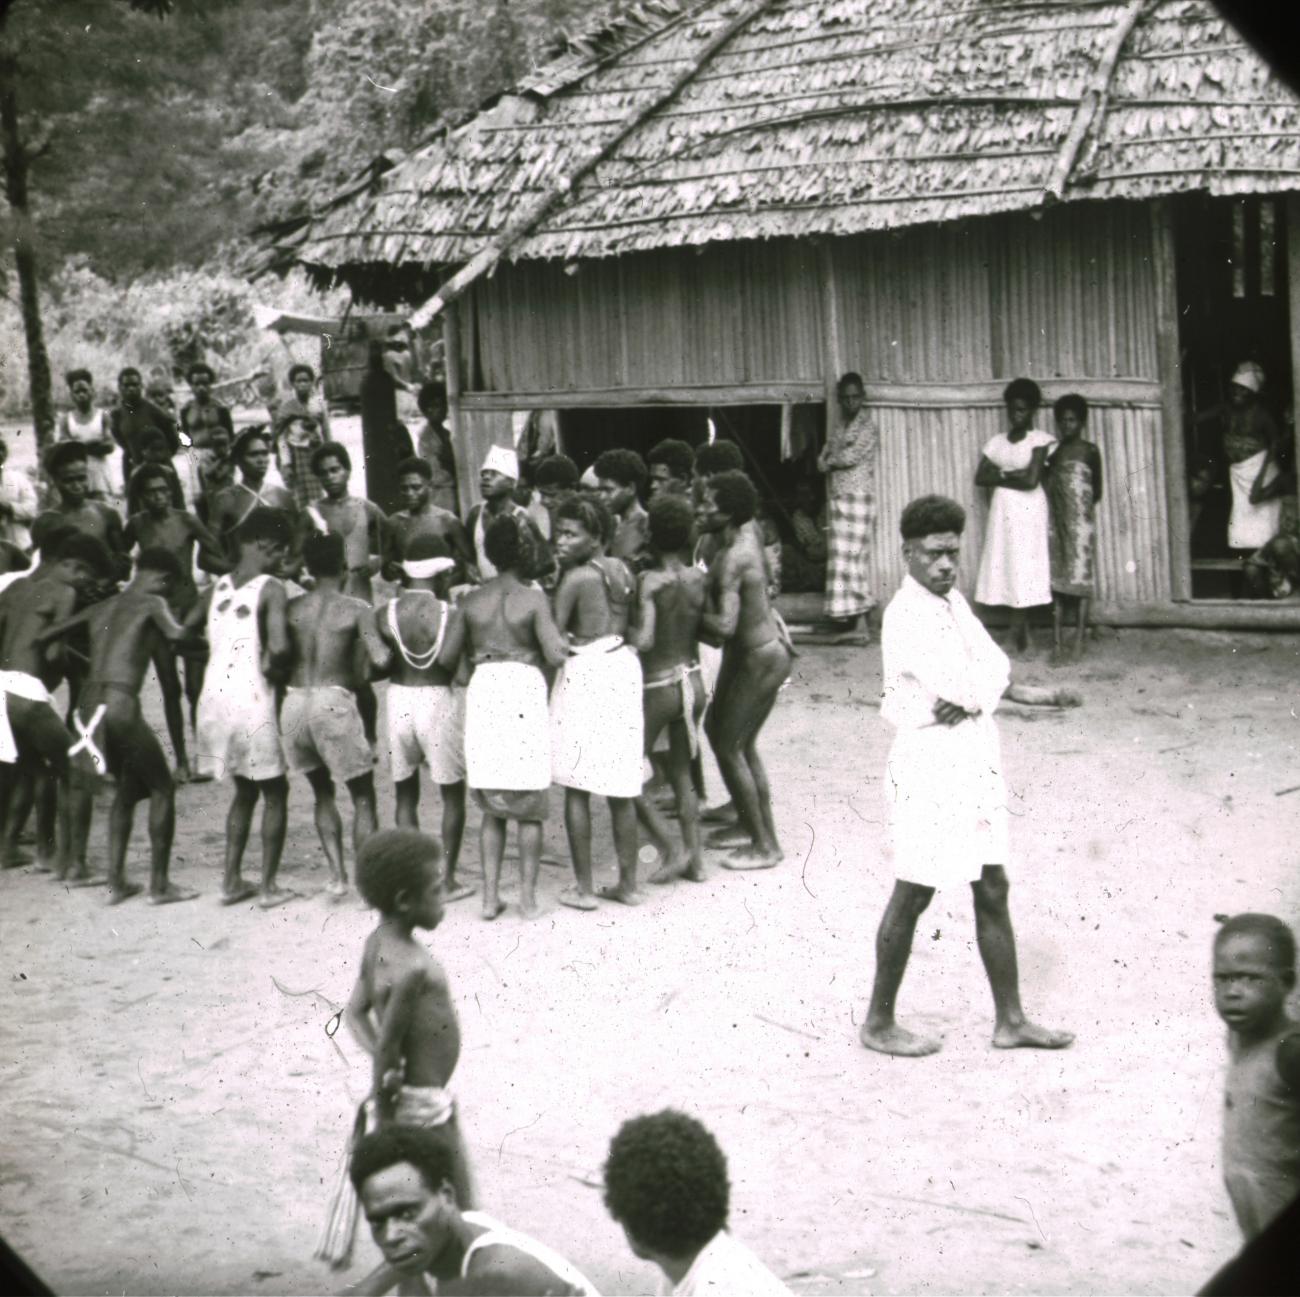 BD/329/42 - 
Groep Papoea-jongeren,deels westers gekleed, voert een soort dans uit
